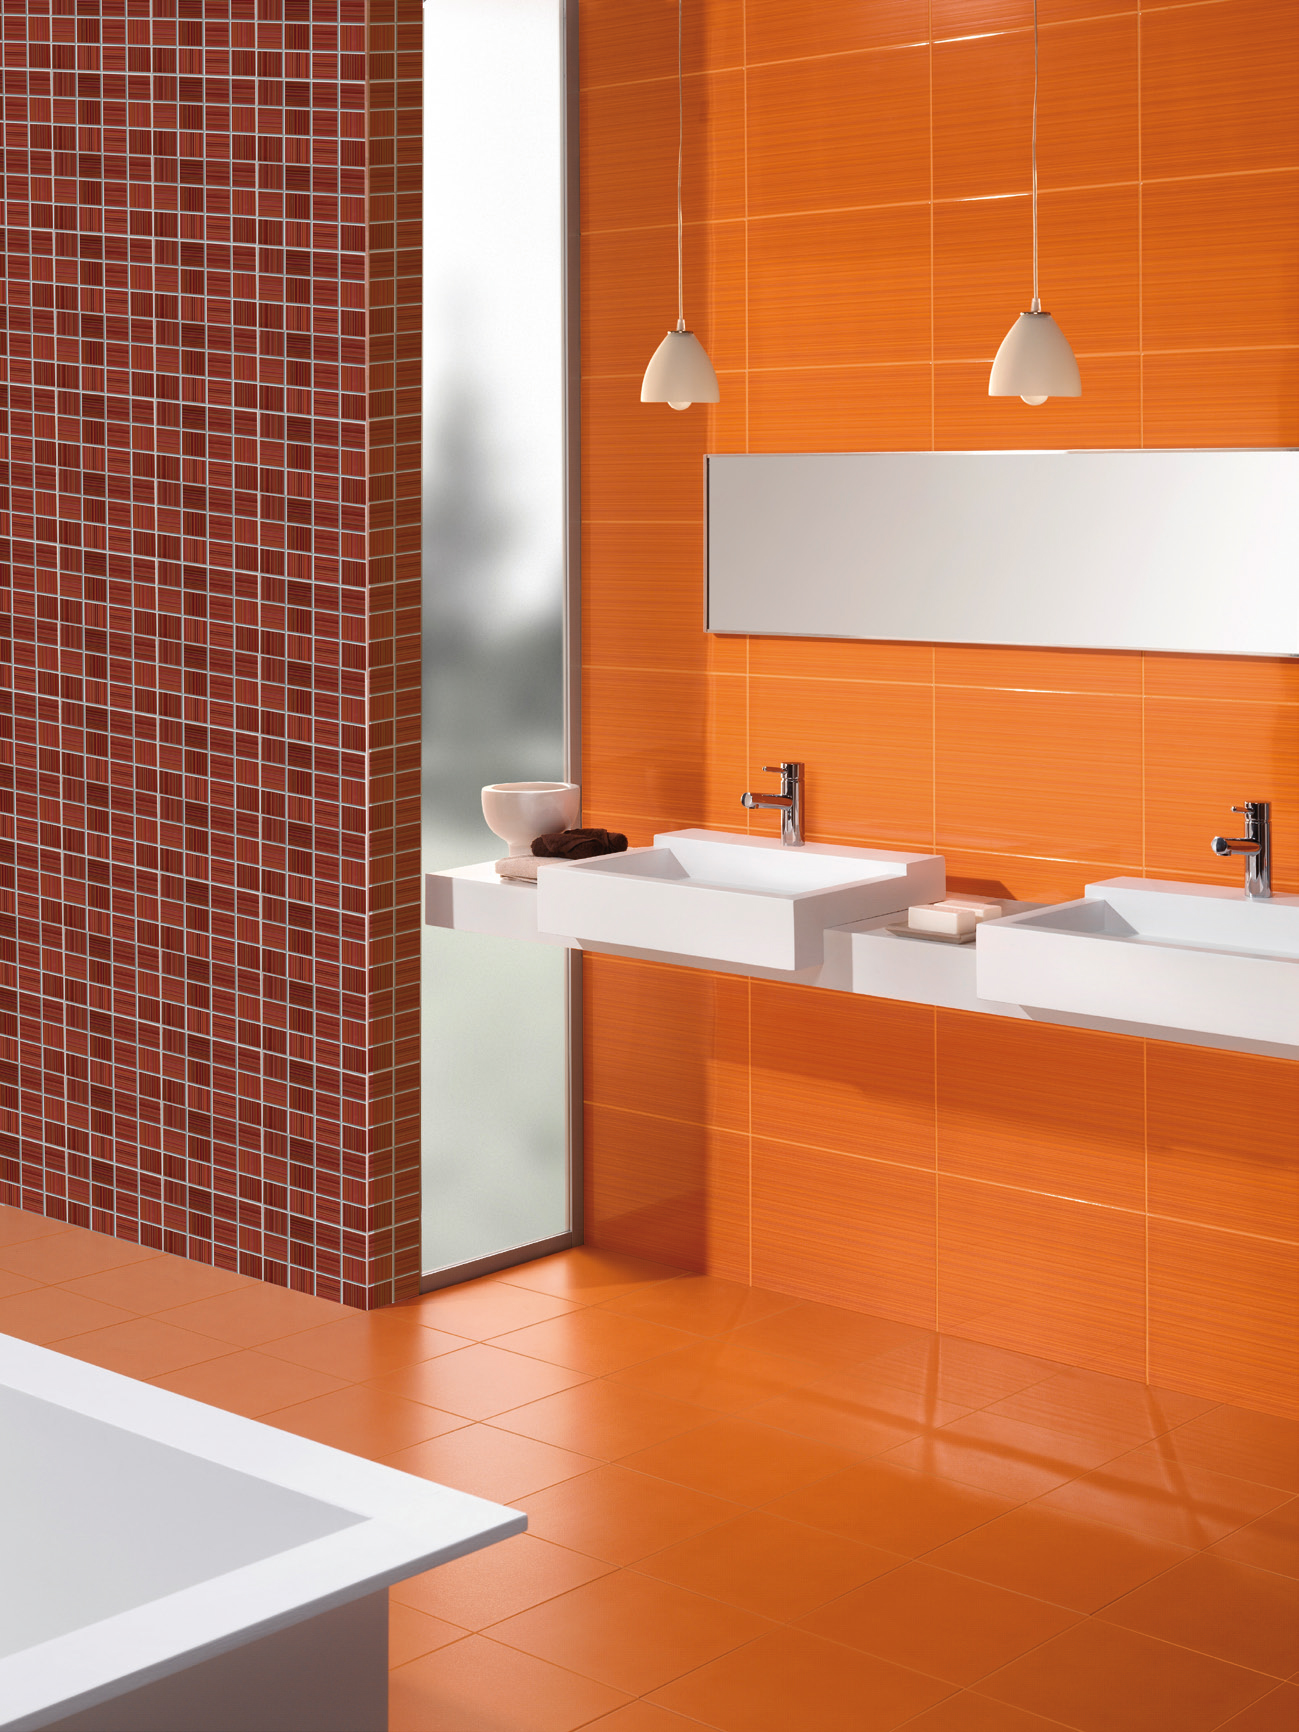 Πορτοκαλί, καφέ και λευκά χρώματα στο μπάνιο